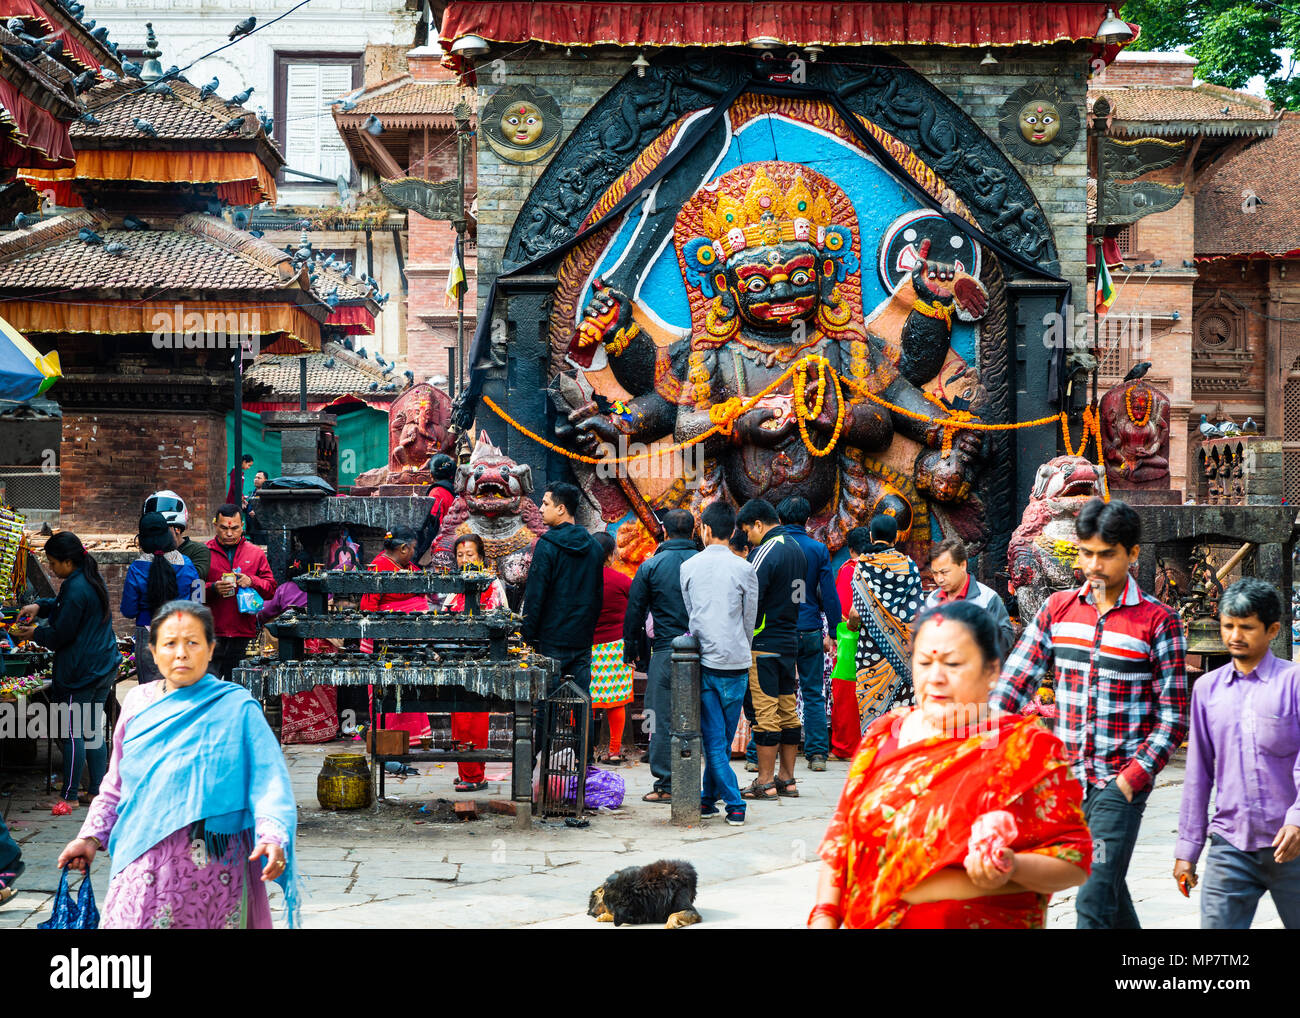 Katmandou, Népal - CIRCA AVRIL 2018 : culte dévots Kal Bhairav qui représente la divinité Shiva dans sa manifestation destructrice. Banque D'Images